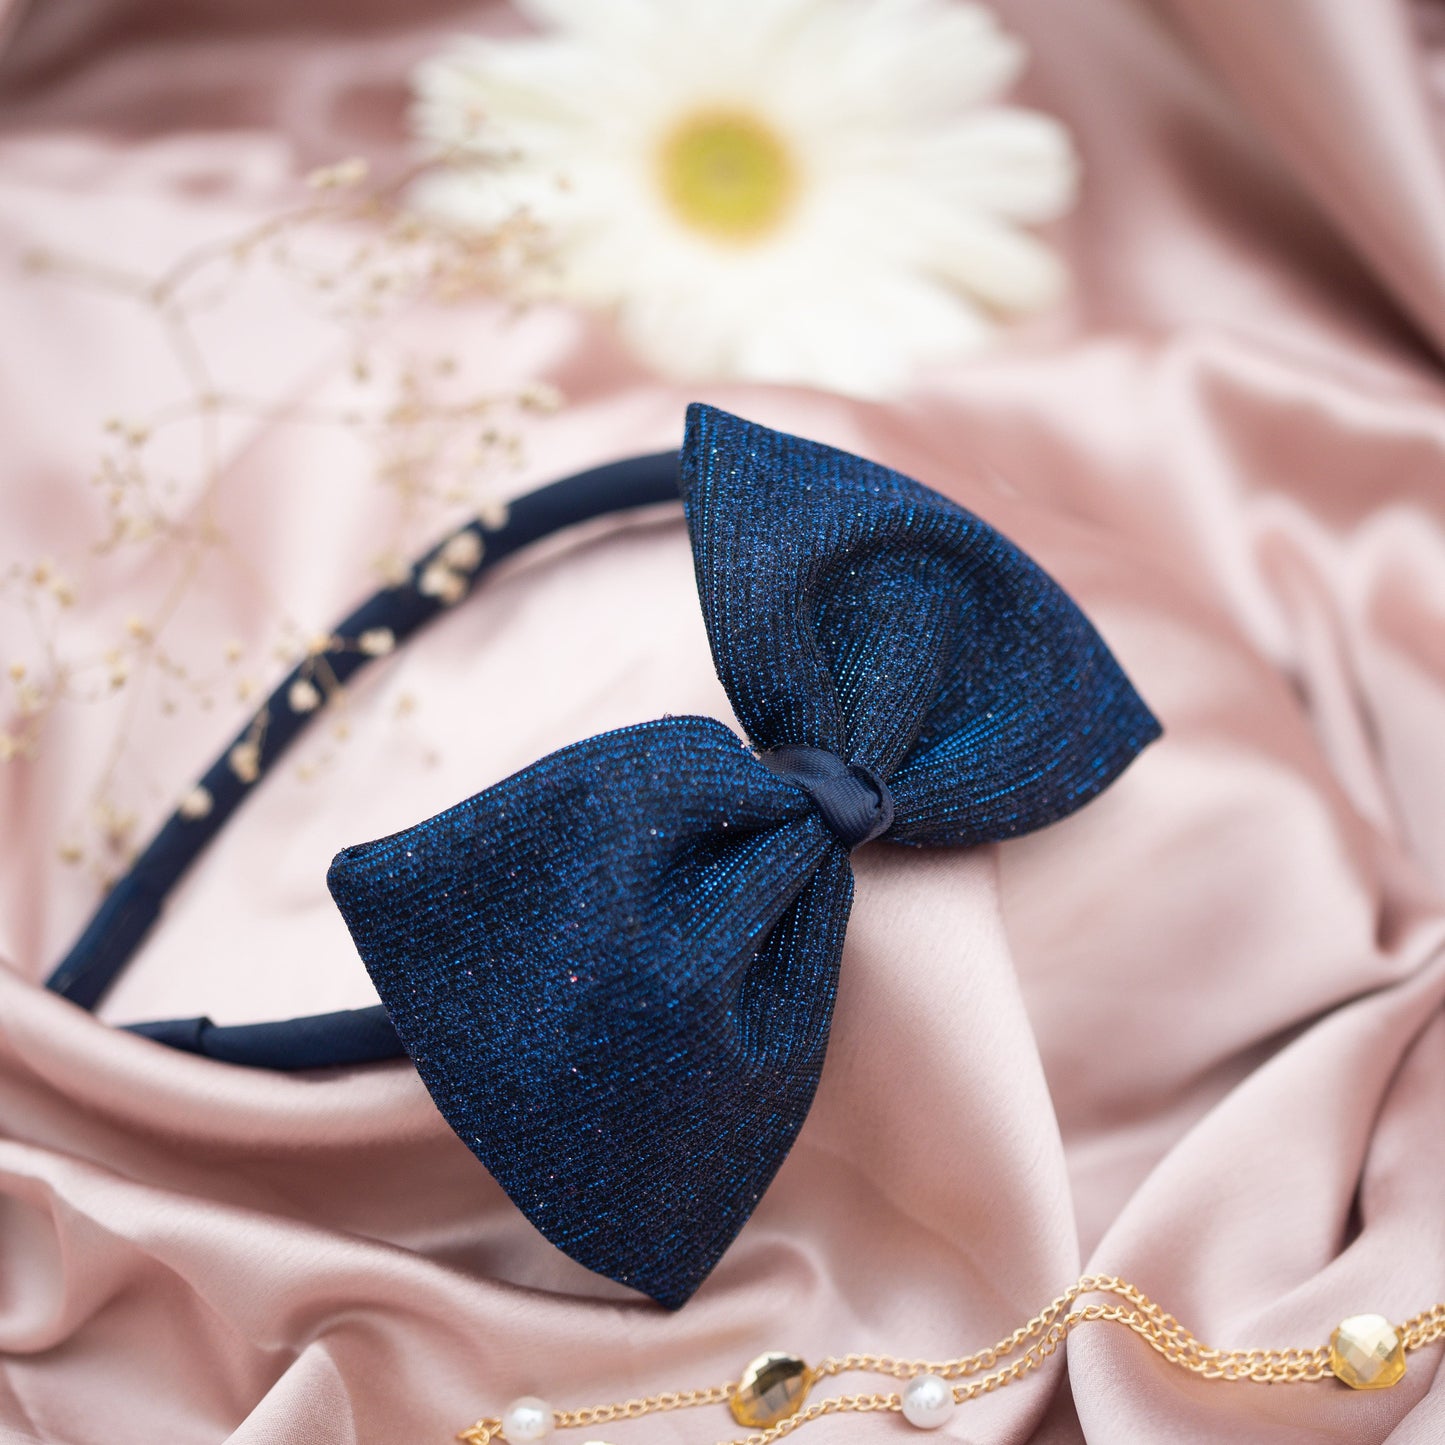 Ribbon Candy - Shiny Big Party Bow hairband - Dark blue